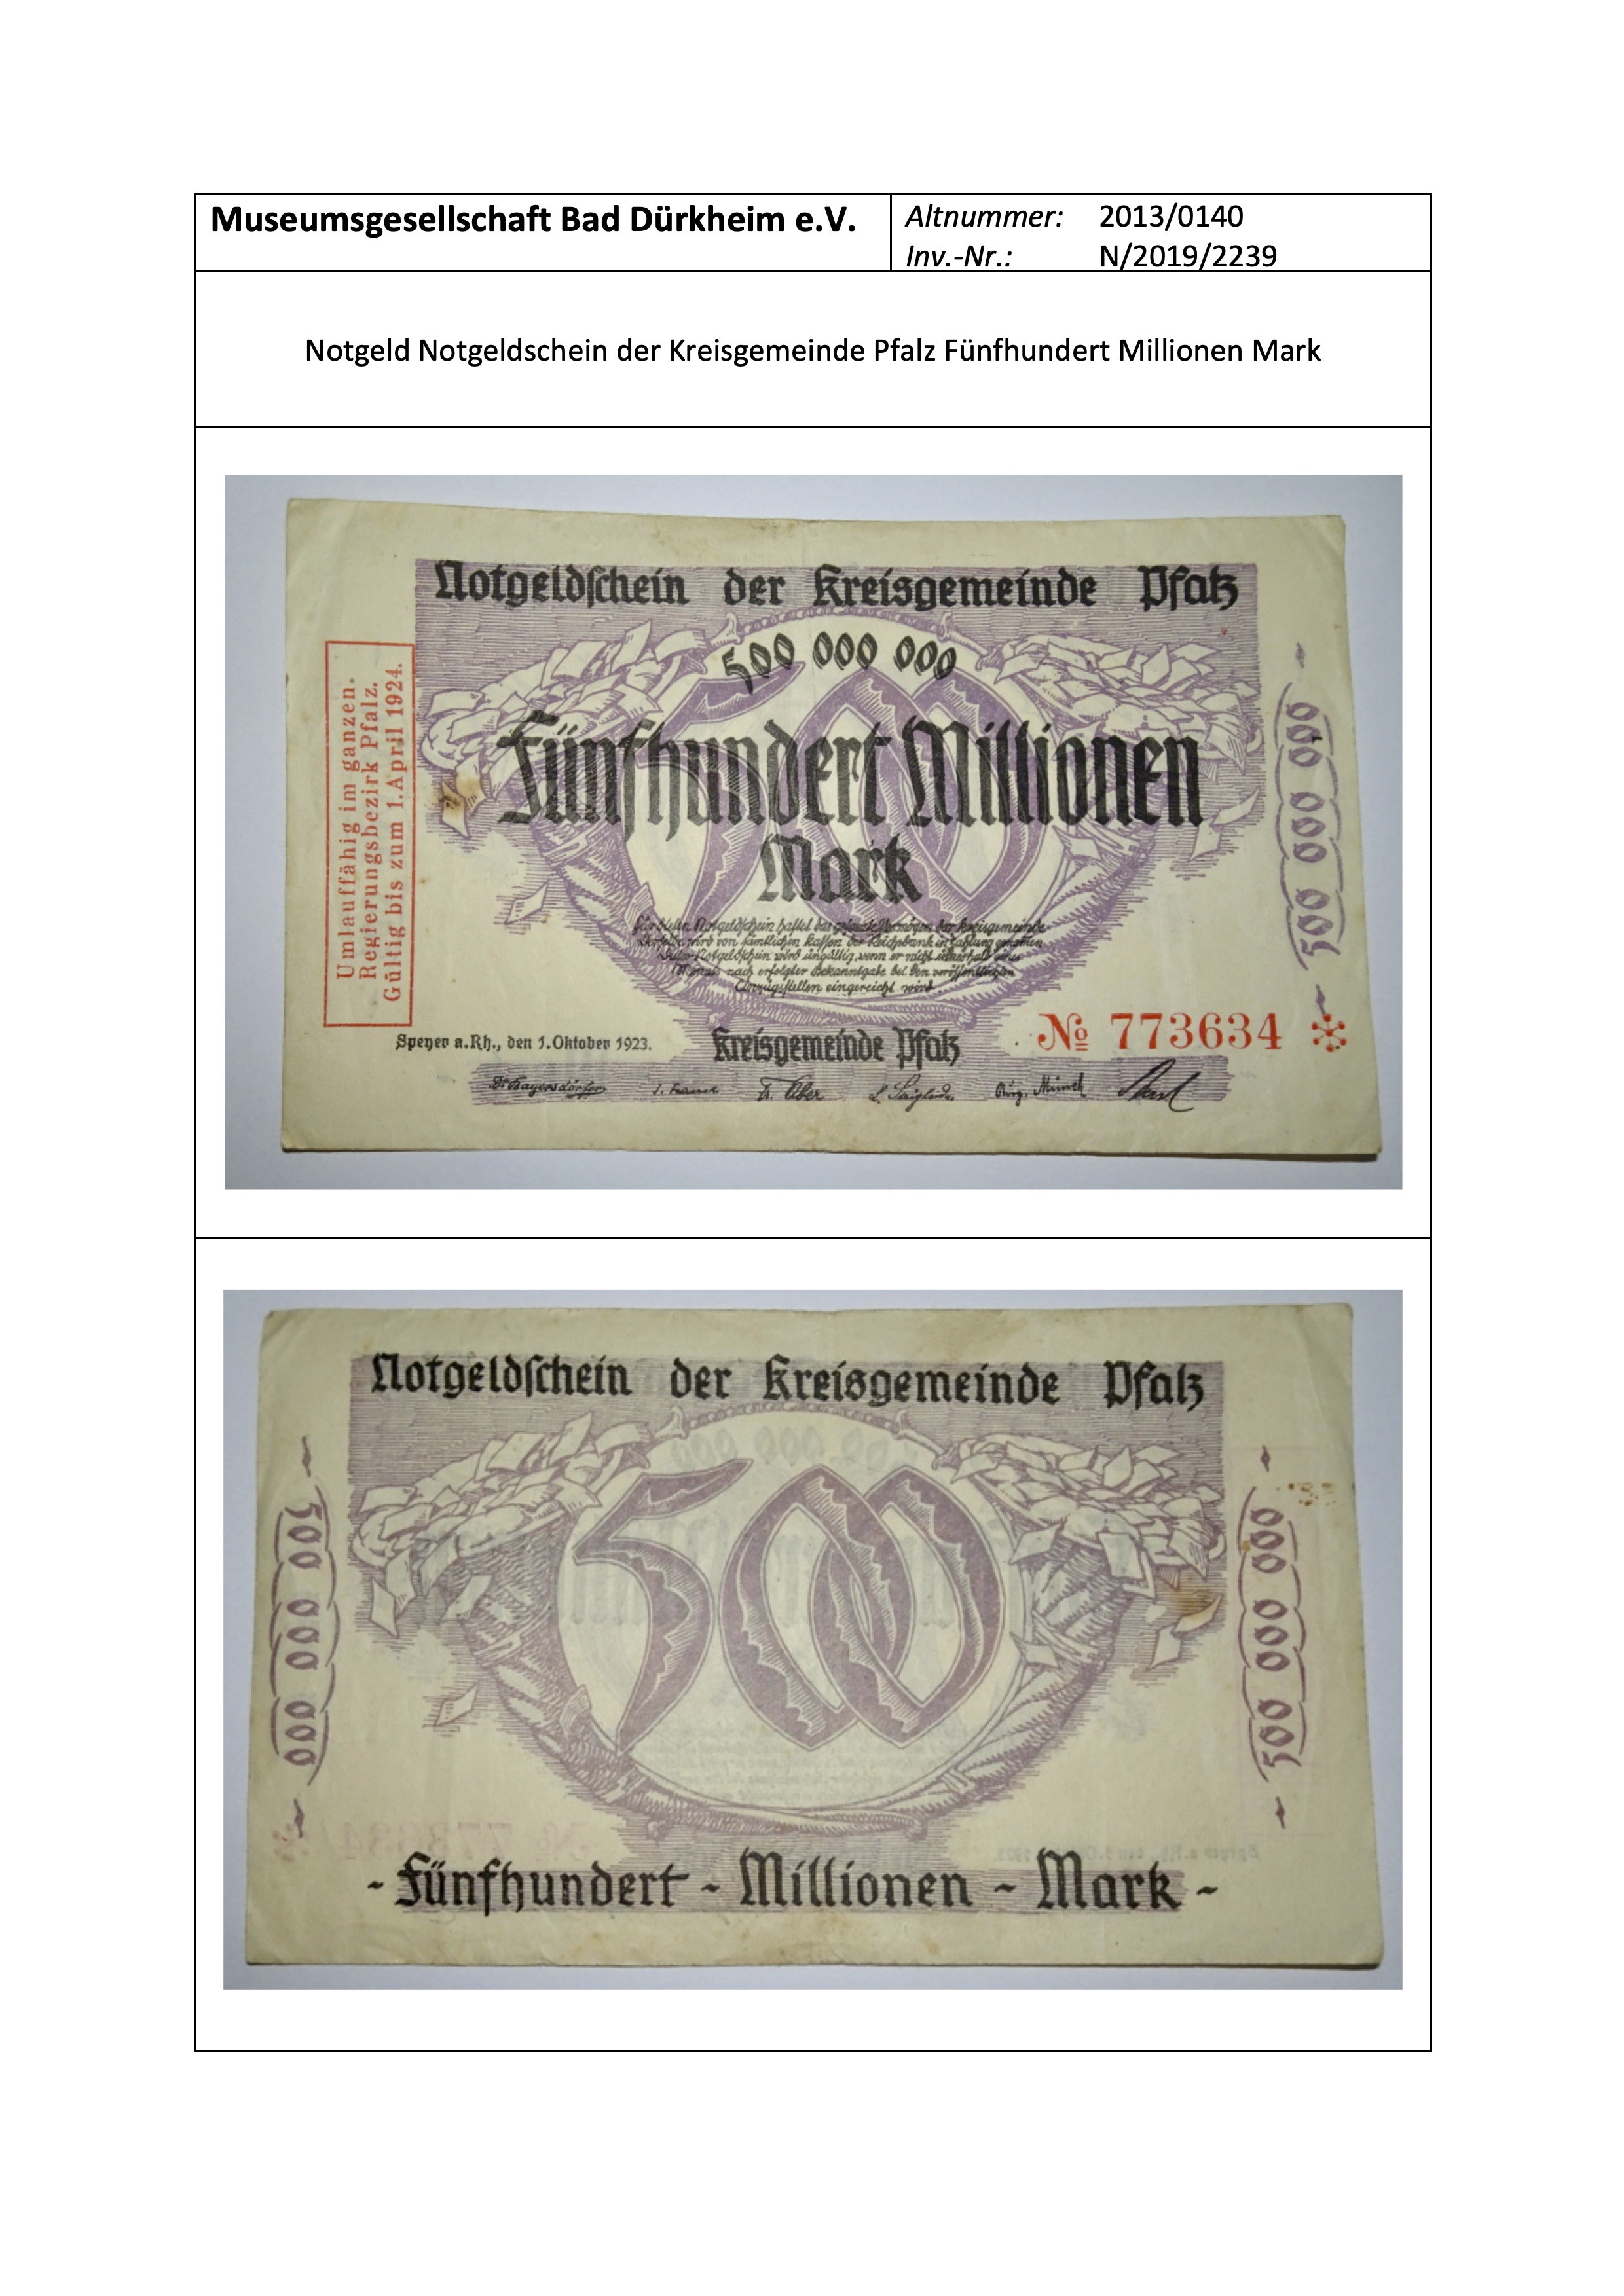 Notgeld Notgeldschein der Kreisgemeinde Pfalz Fünfhundert Millionen Mark (Museumsgesellschaft Bad Dürkheim e.V. CC BY-NC-SA)